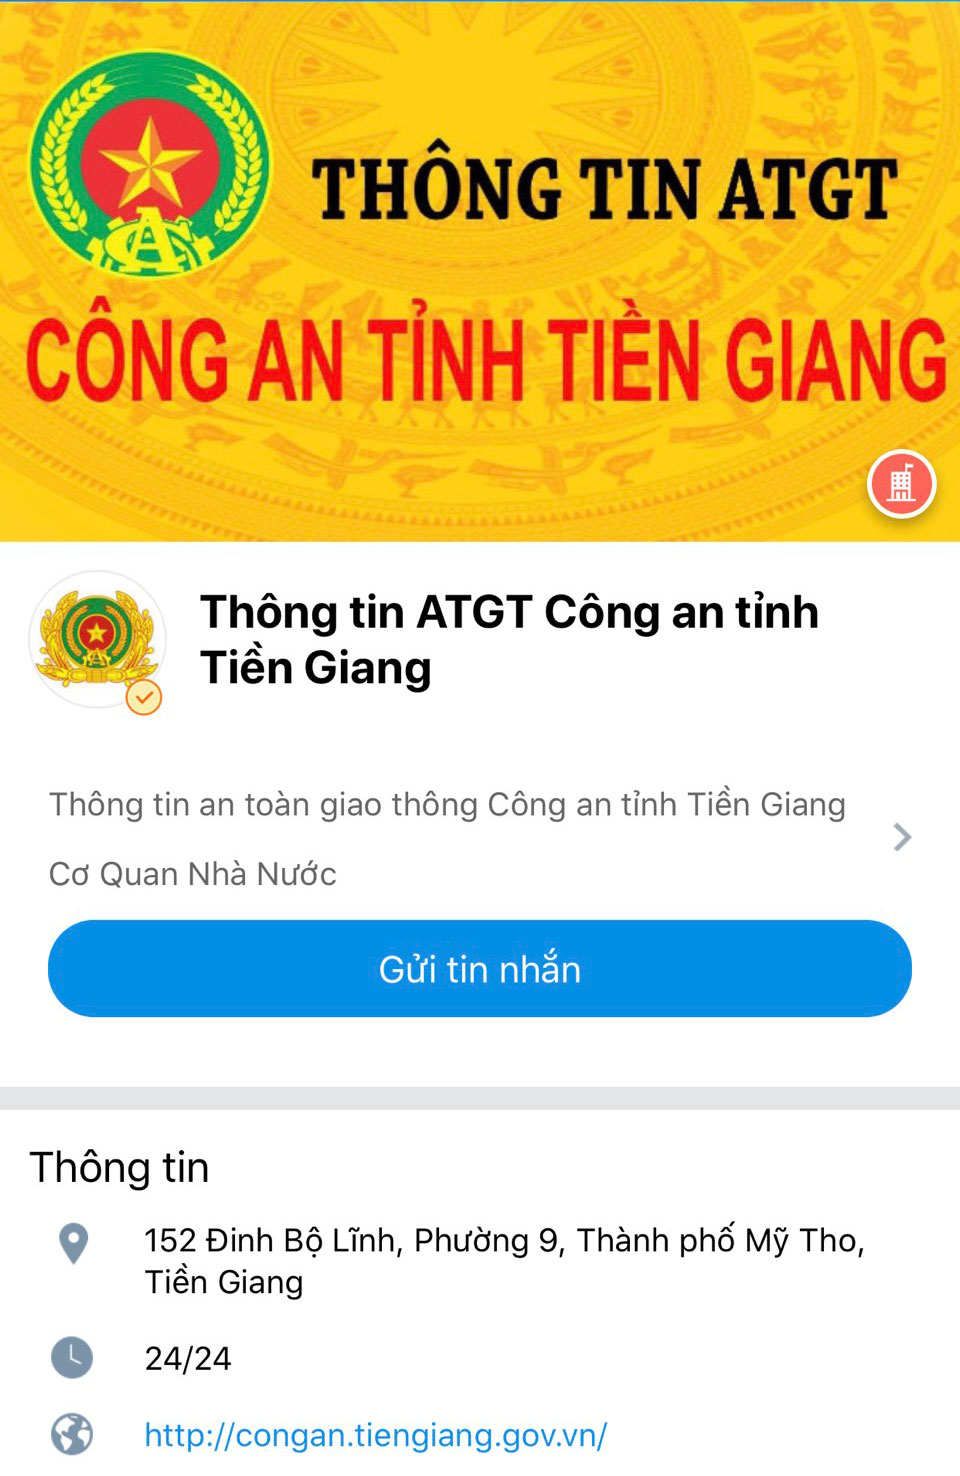 Giao diện trang zalo Công an Tiền Giang.